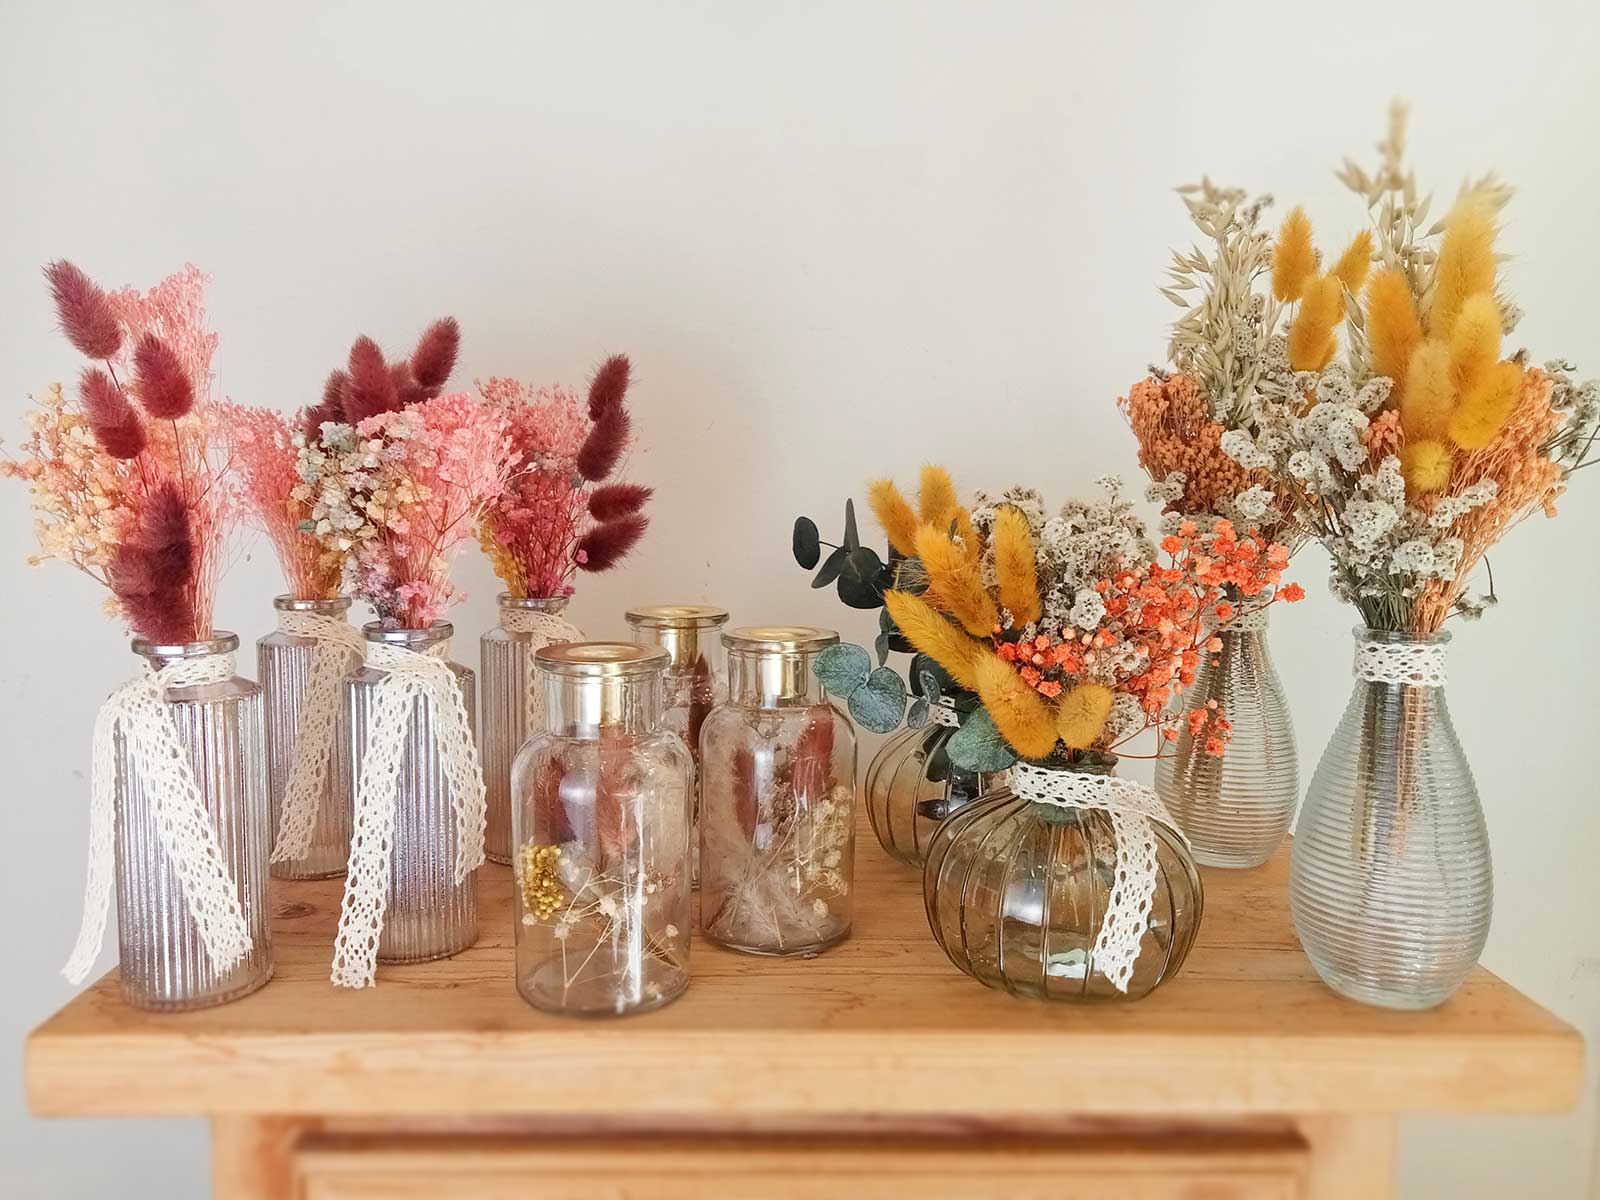 Botellas de cristal con flor seca y preservada